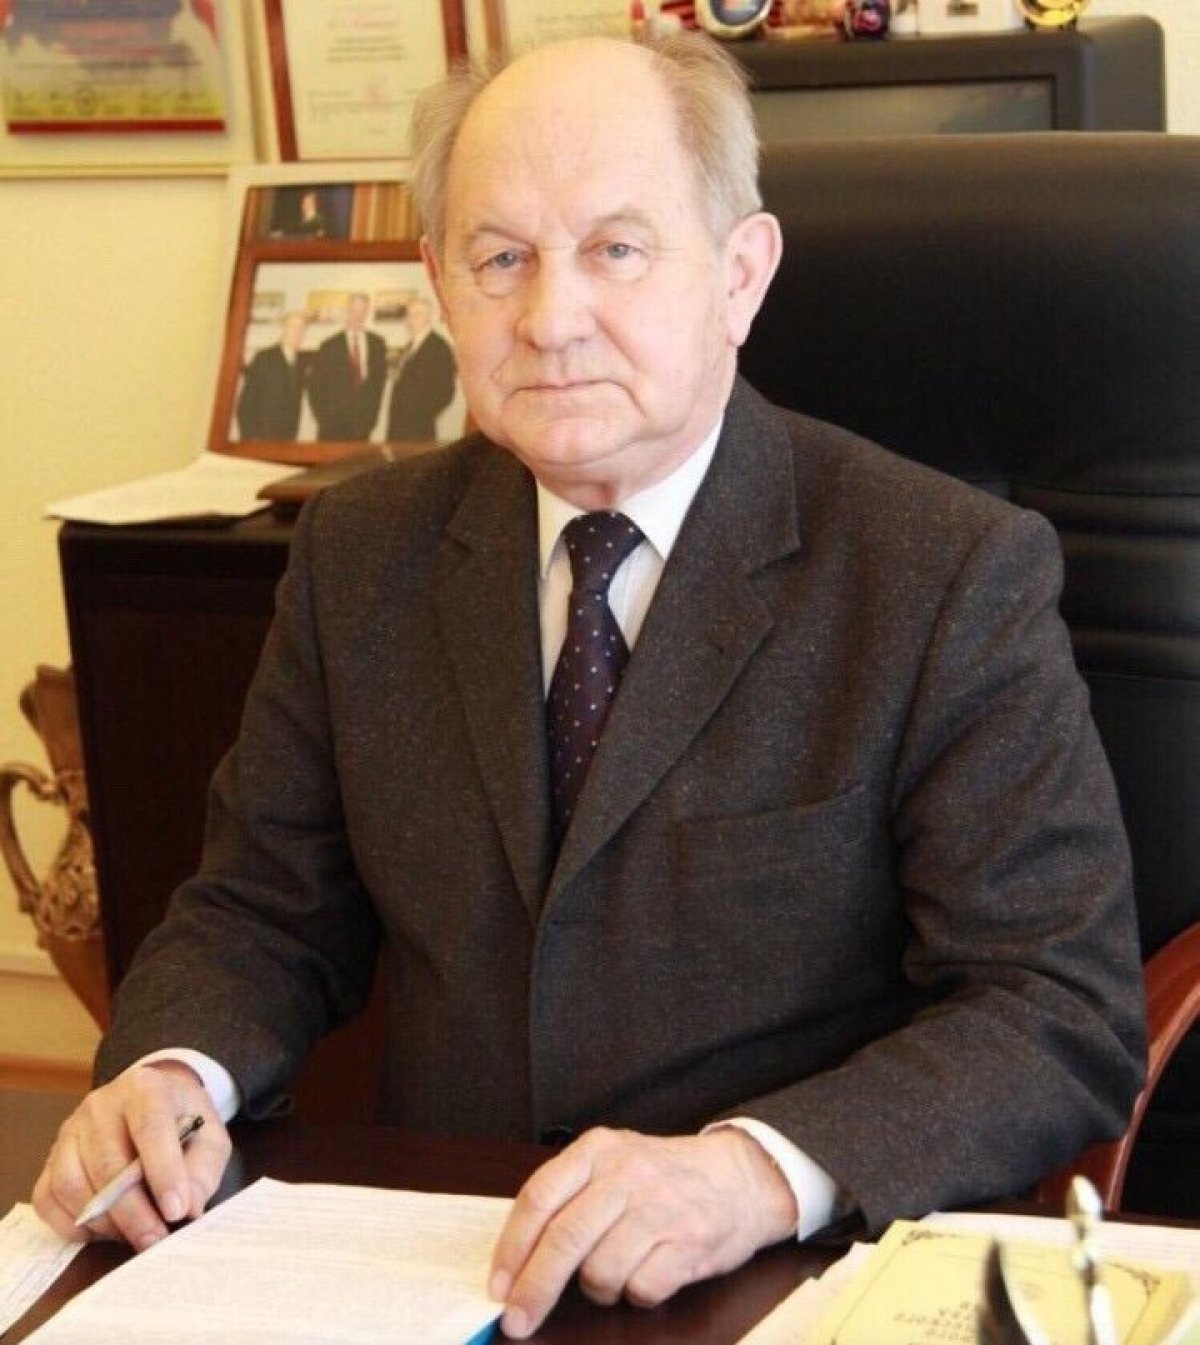 Сегодня очень важный для нашей академии день. 11 июня – день рождения Николая Николаевича Гриценко, Президента Академии труда и социальных отношений. И сегодня ему бы исполнился 91 год…